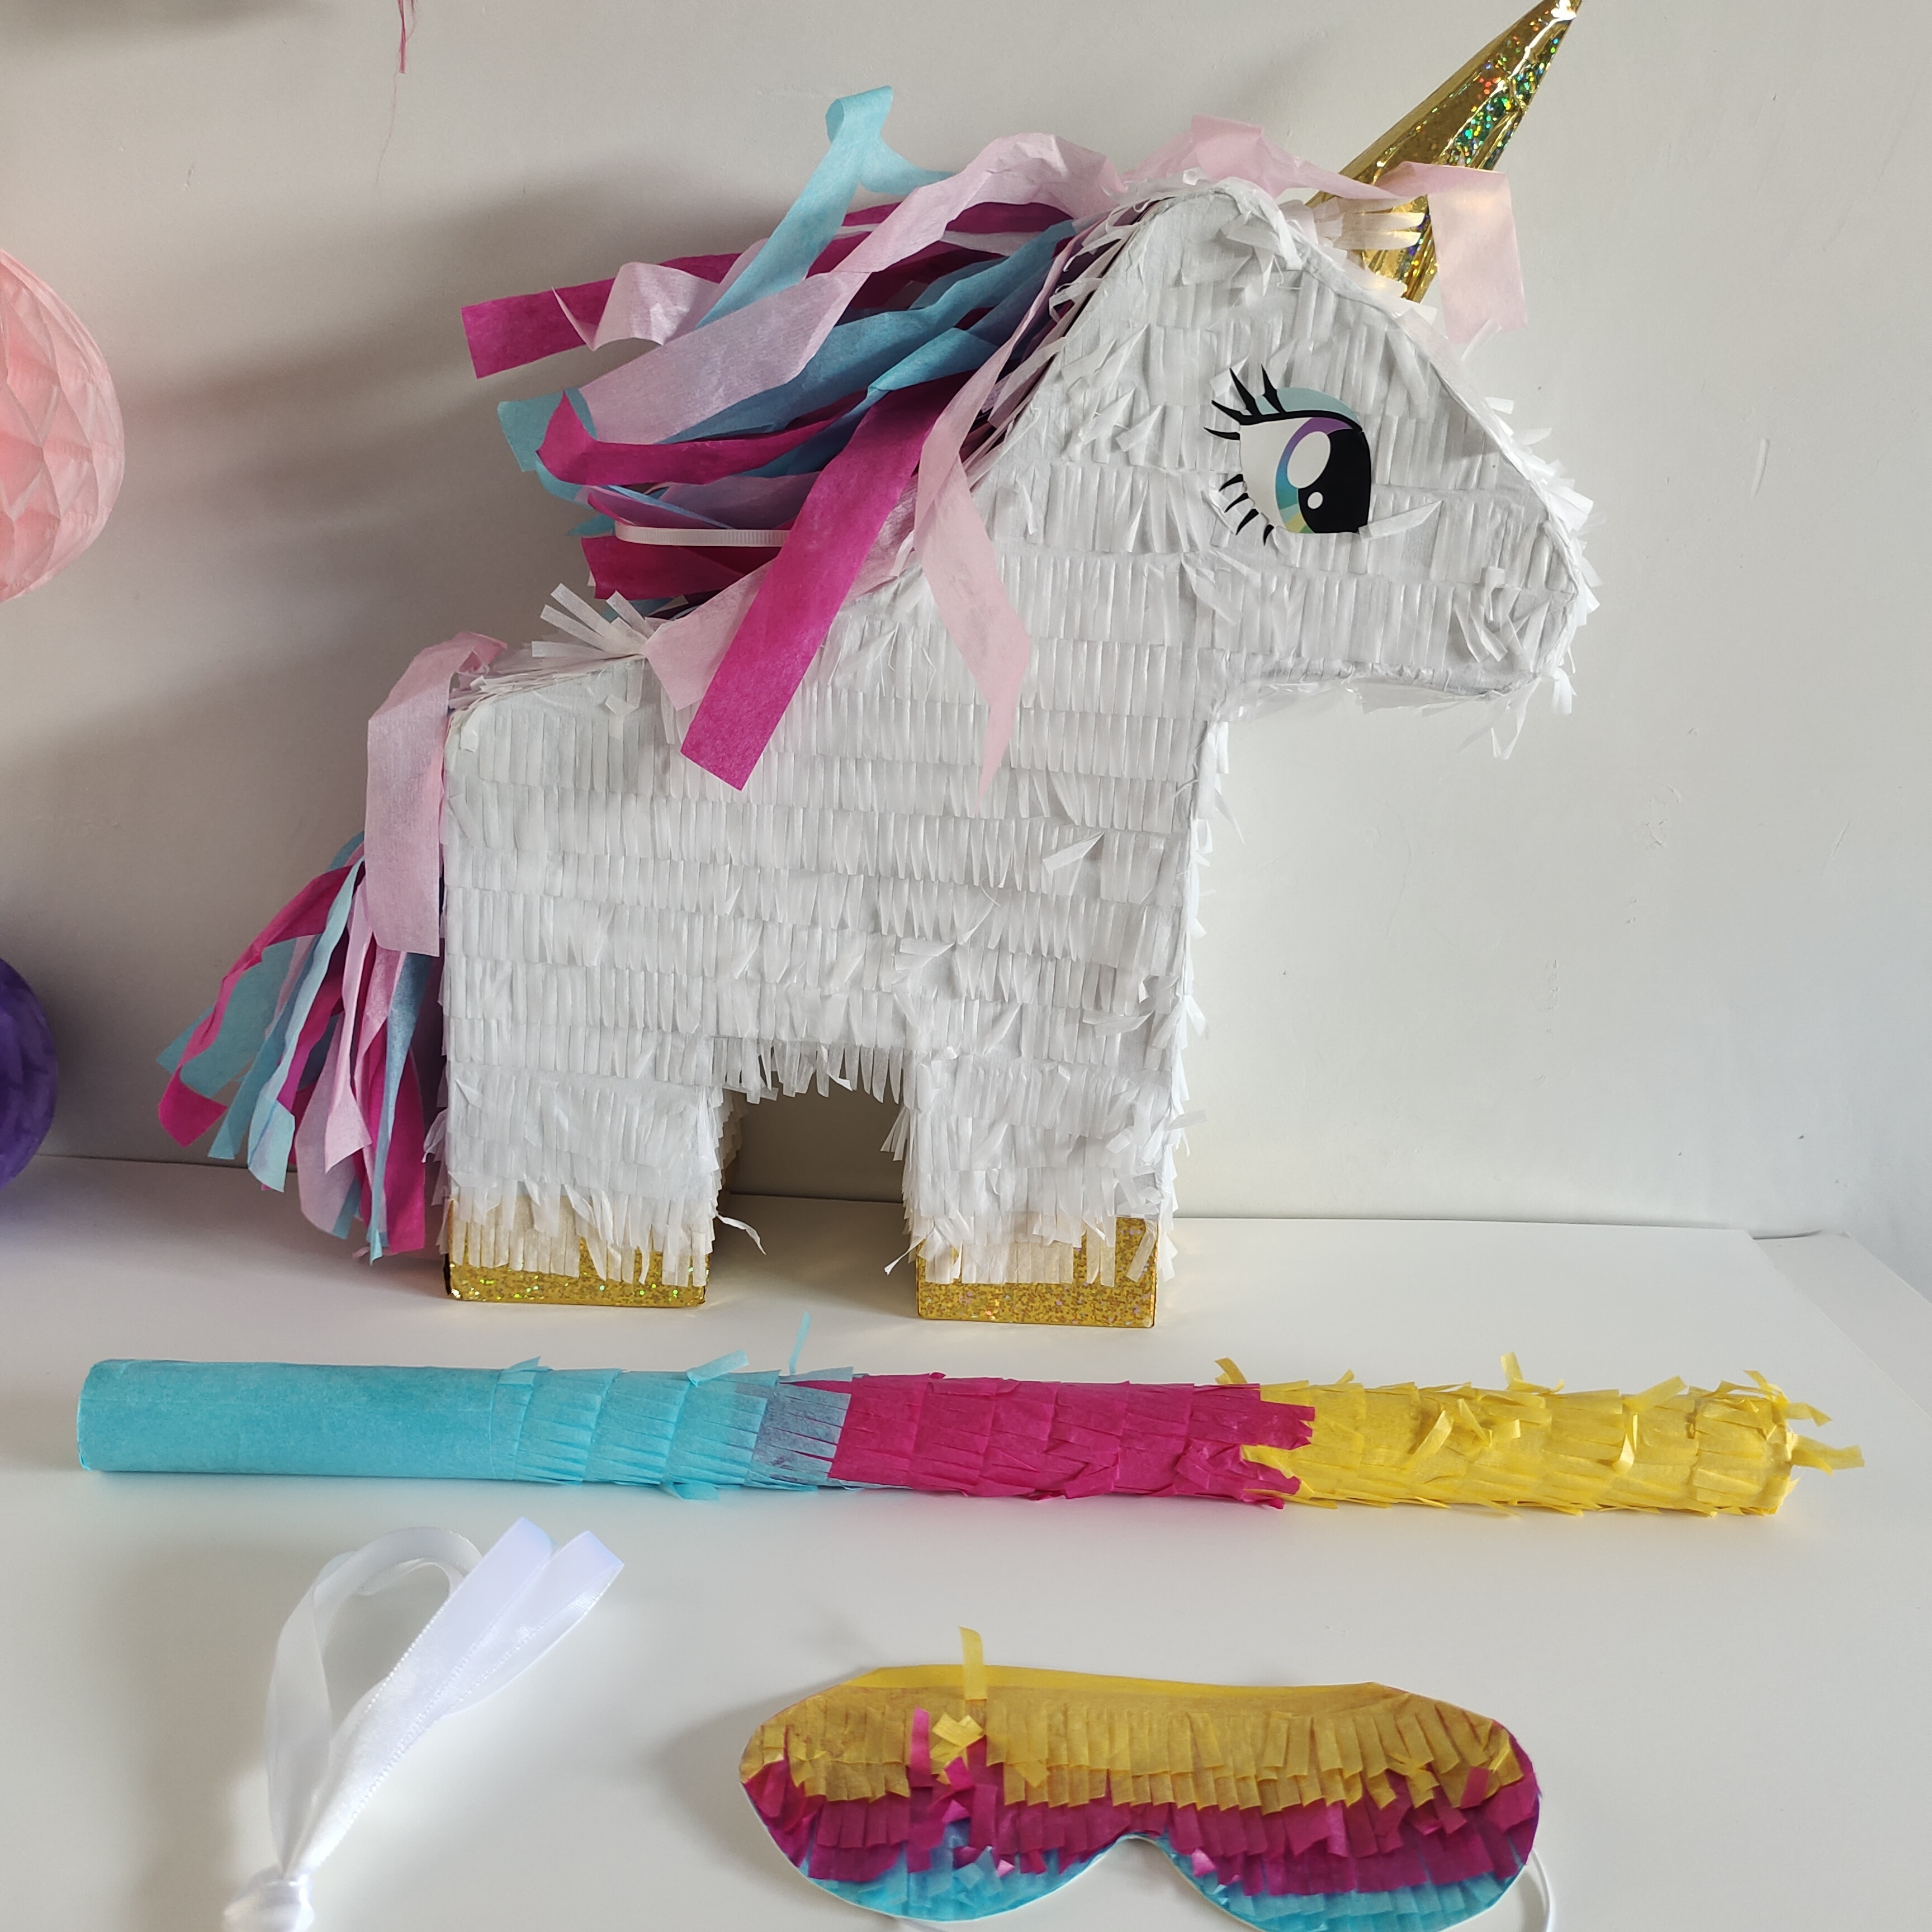  Piñata para fiesta de cumpleaños de niños, controlador